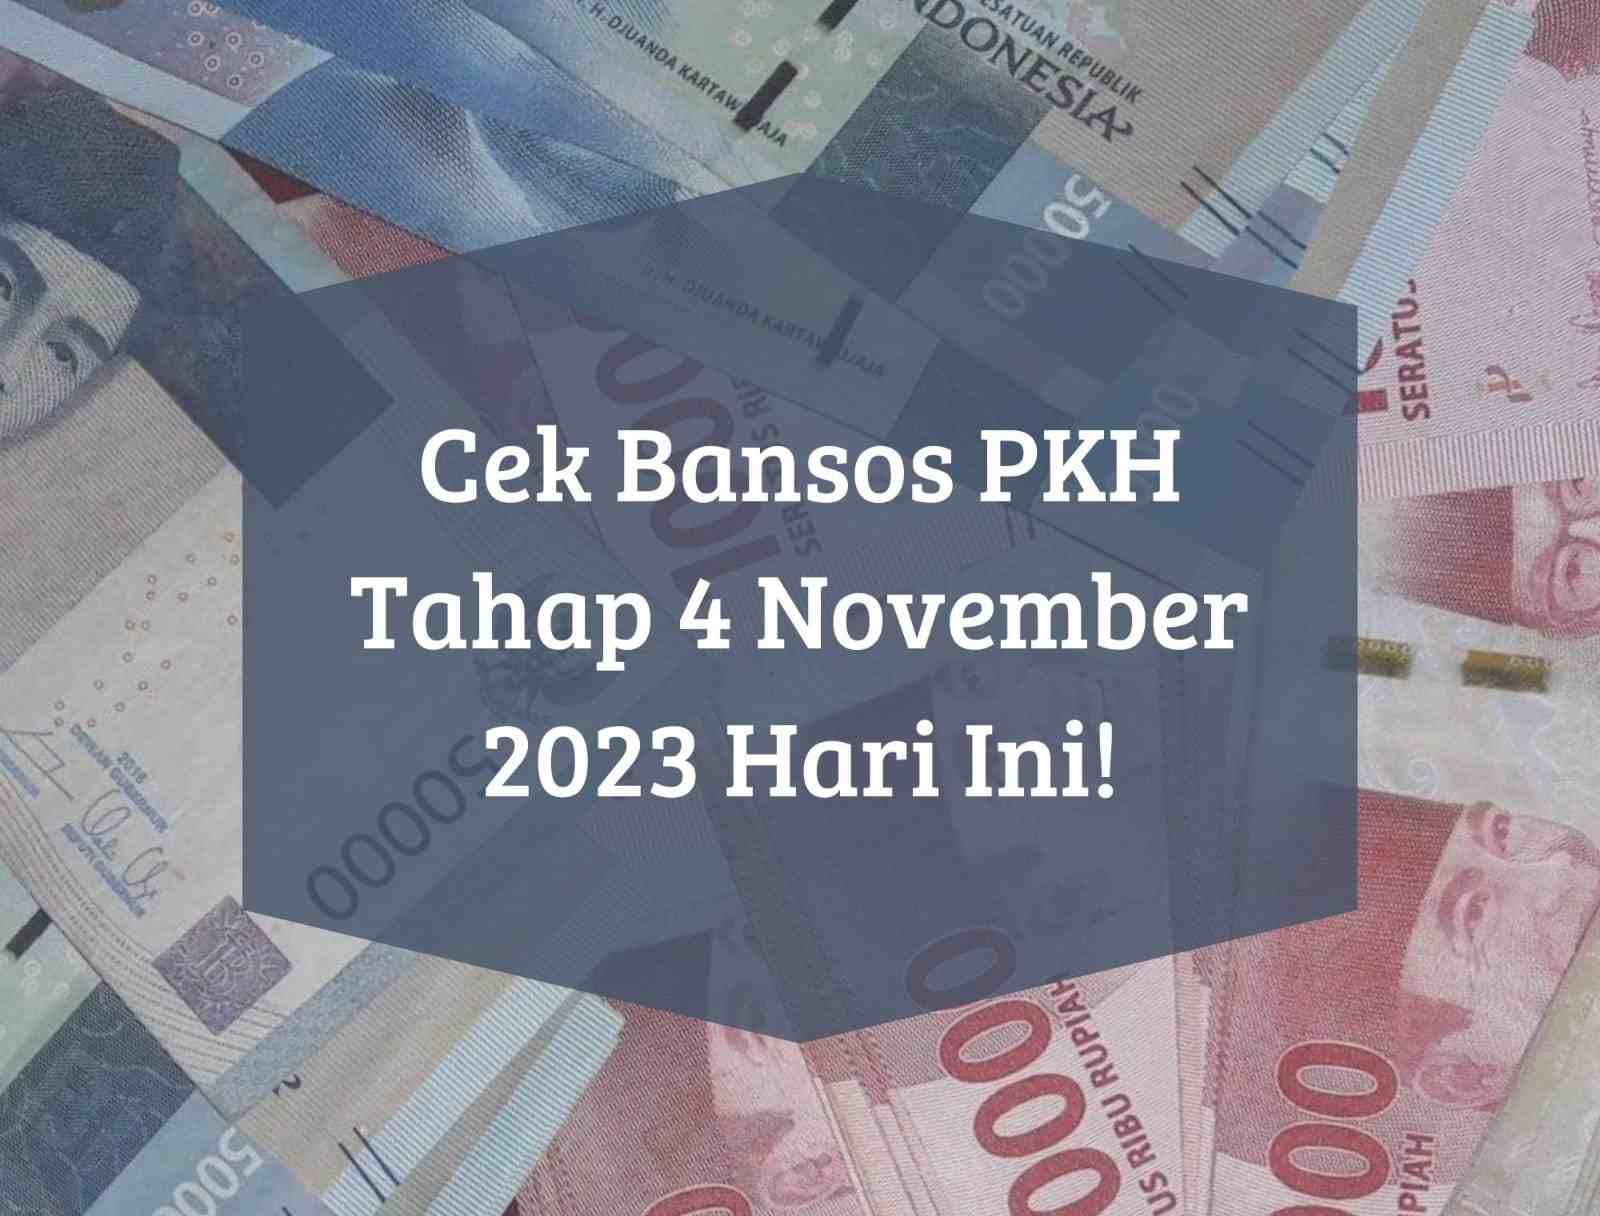 Masih Cair November 2023, Bansos PKH Tahap 4 Sudah Diterima di Wilayah Ini, Pastikan Nama Kamu Terdaftar!